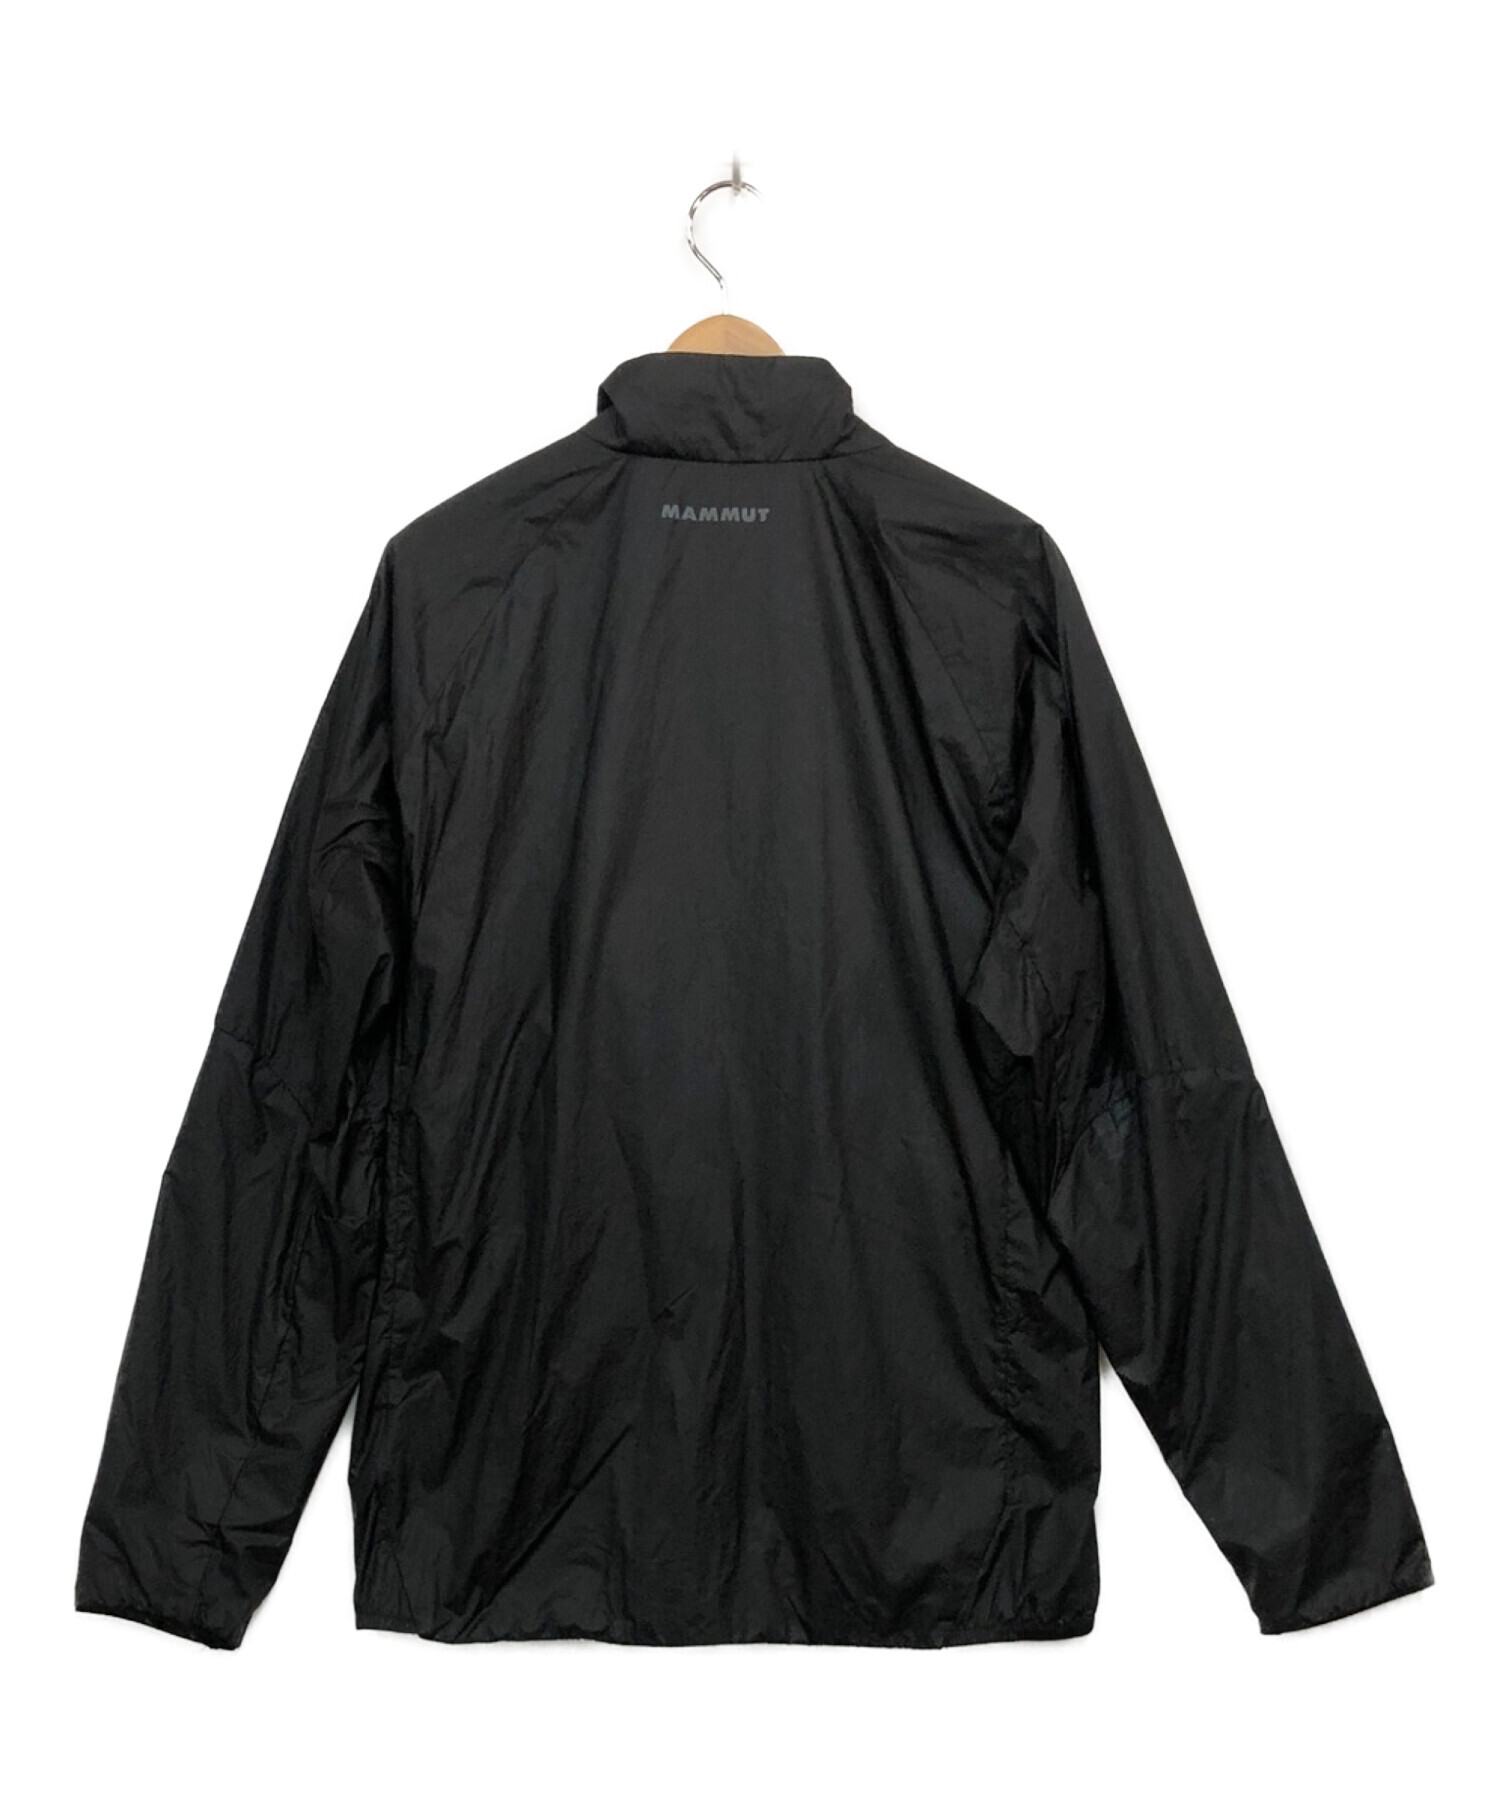 MAMMUT (マムート) ナイロンジャケット ブラック サイズ:XL